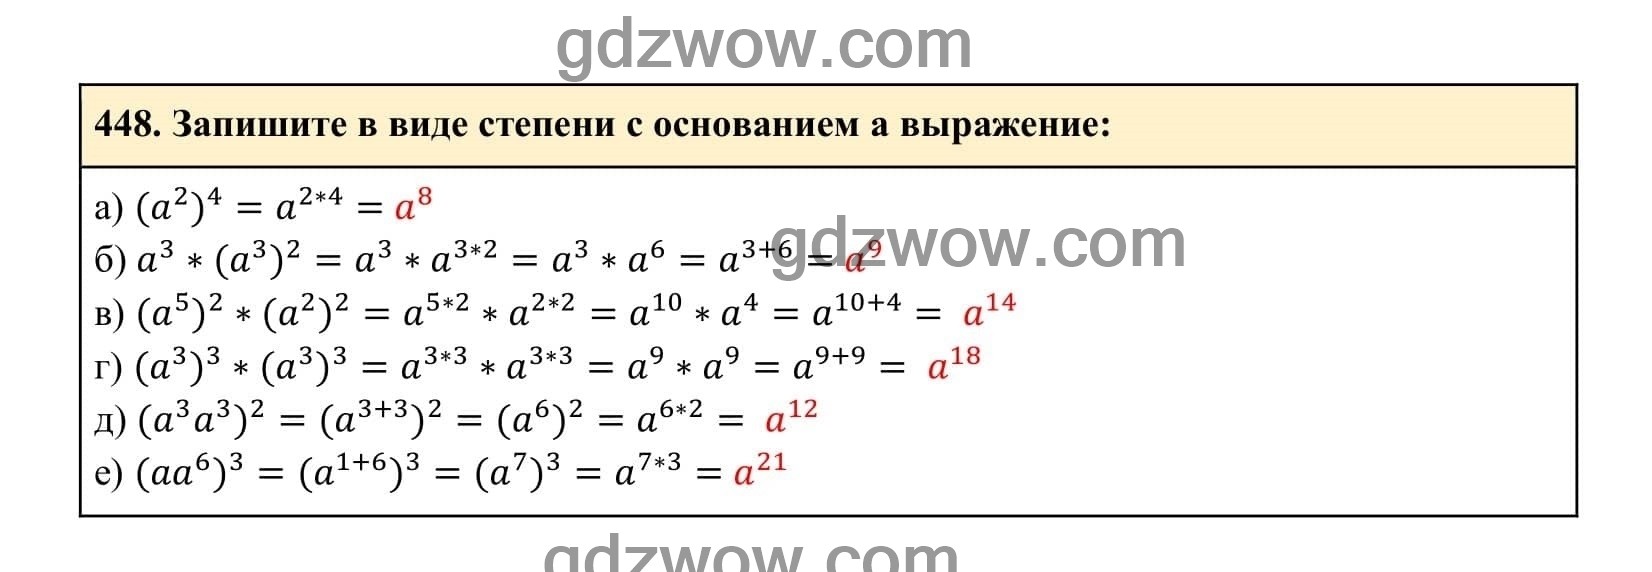 Упражнение 448 - ГДЗ по Алгебре 7 класс Учебник Макарычев (решебник) - GDZwow